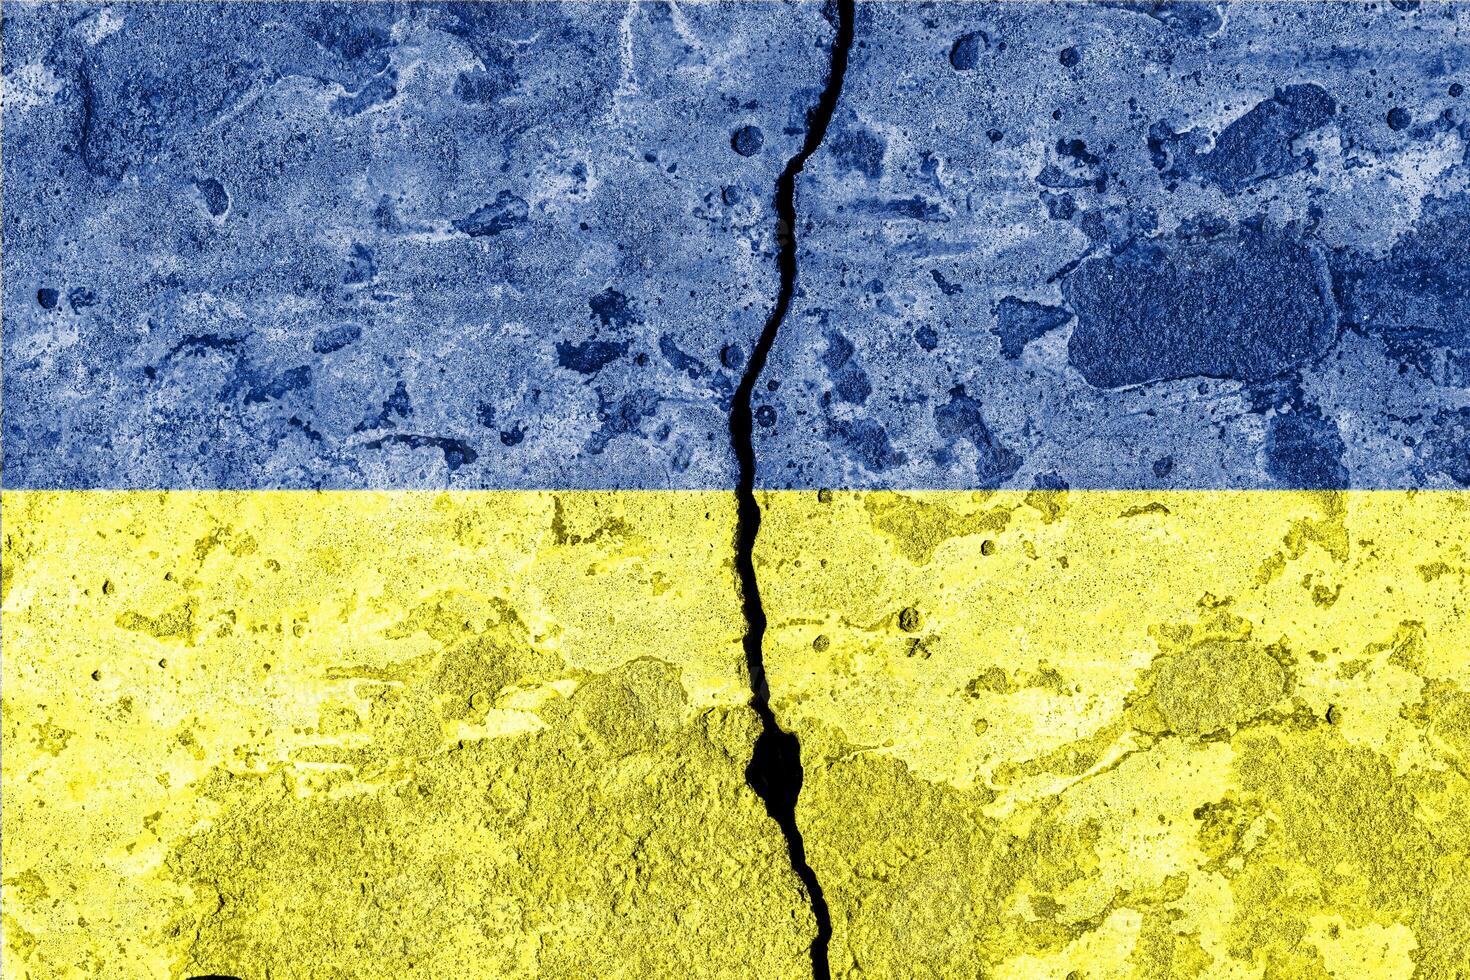 ukrainien drapeau sur fissuré béton mur. le concept de crise, défaut, économique effondrement, pandémie, conflit, terrorisme ou autre problèmes dans le pays. photo